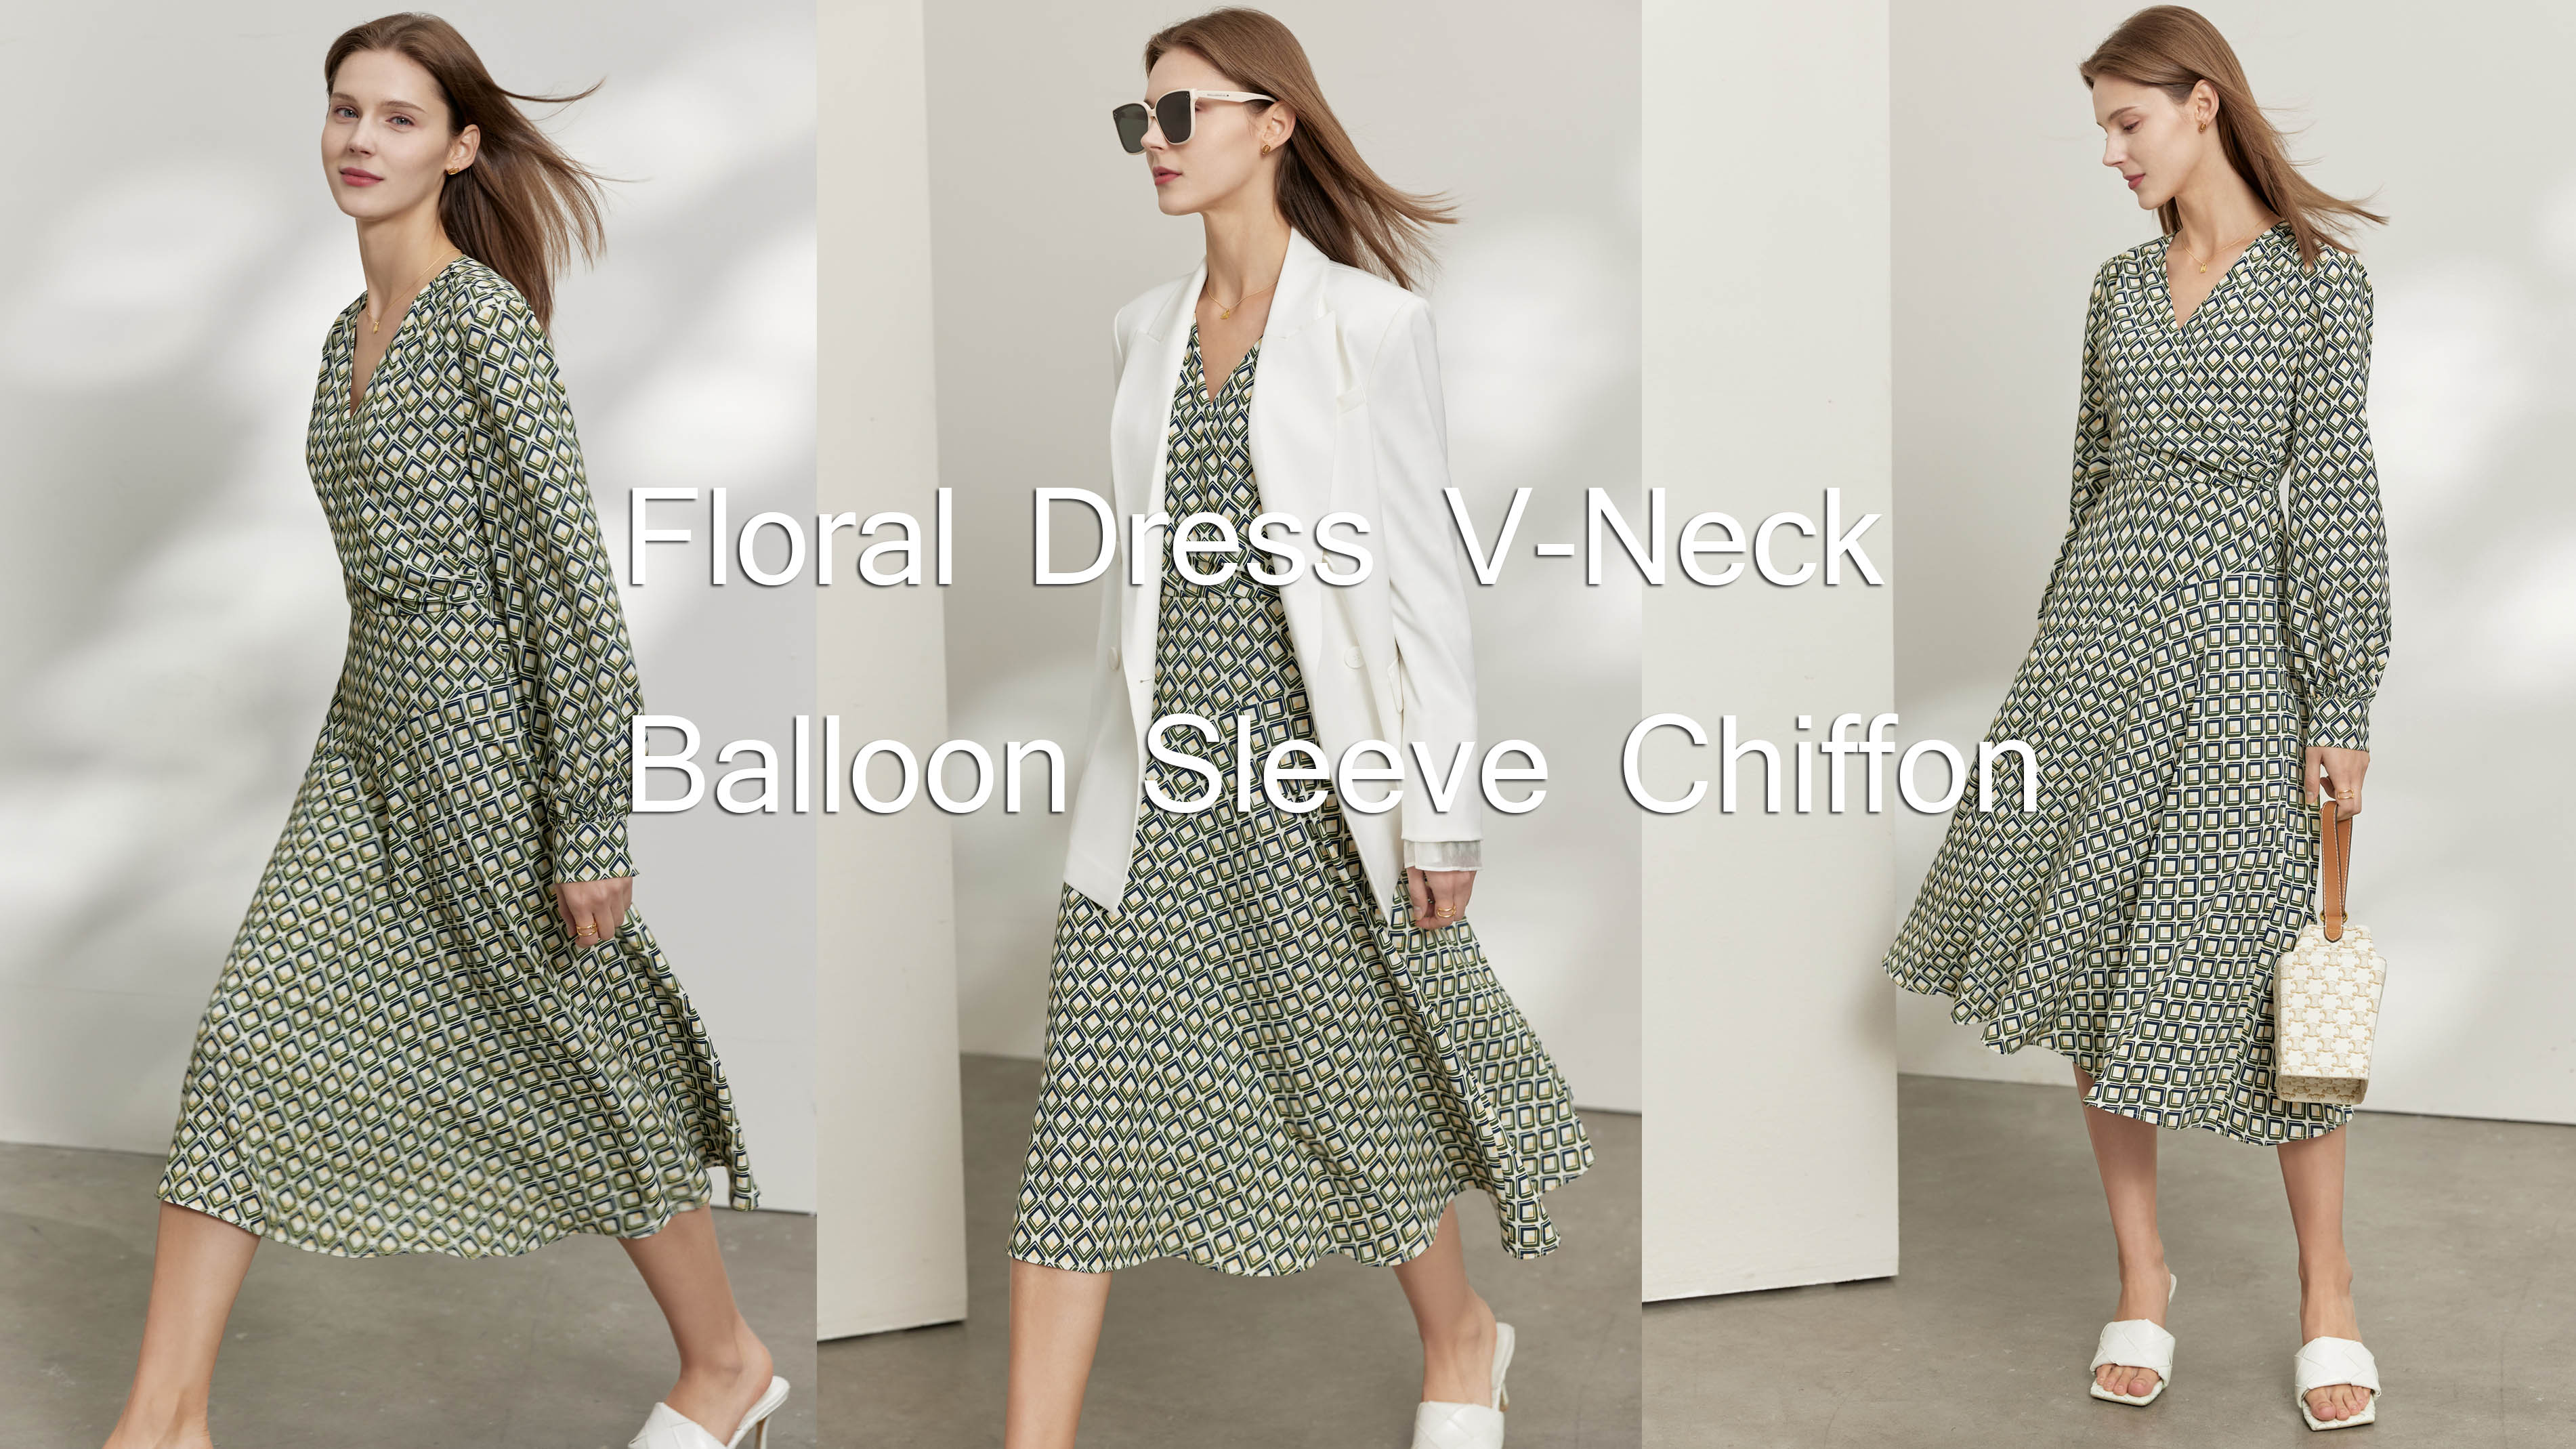 Quality Floral Dress V-Neck Balloon Sleeve Chiffon Manufacturer |Auschalink